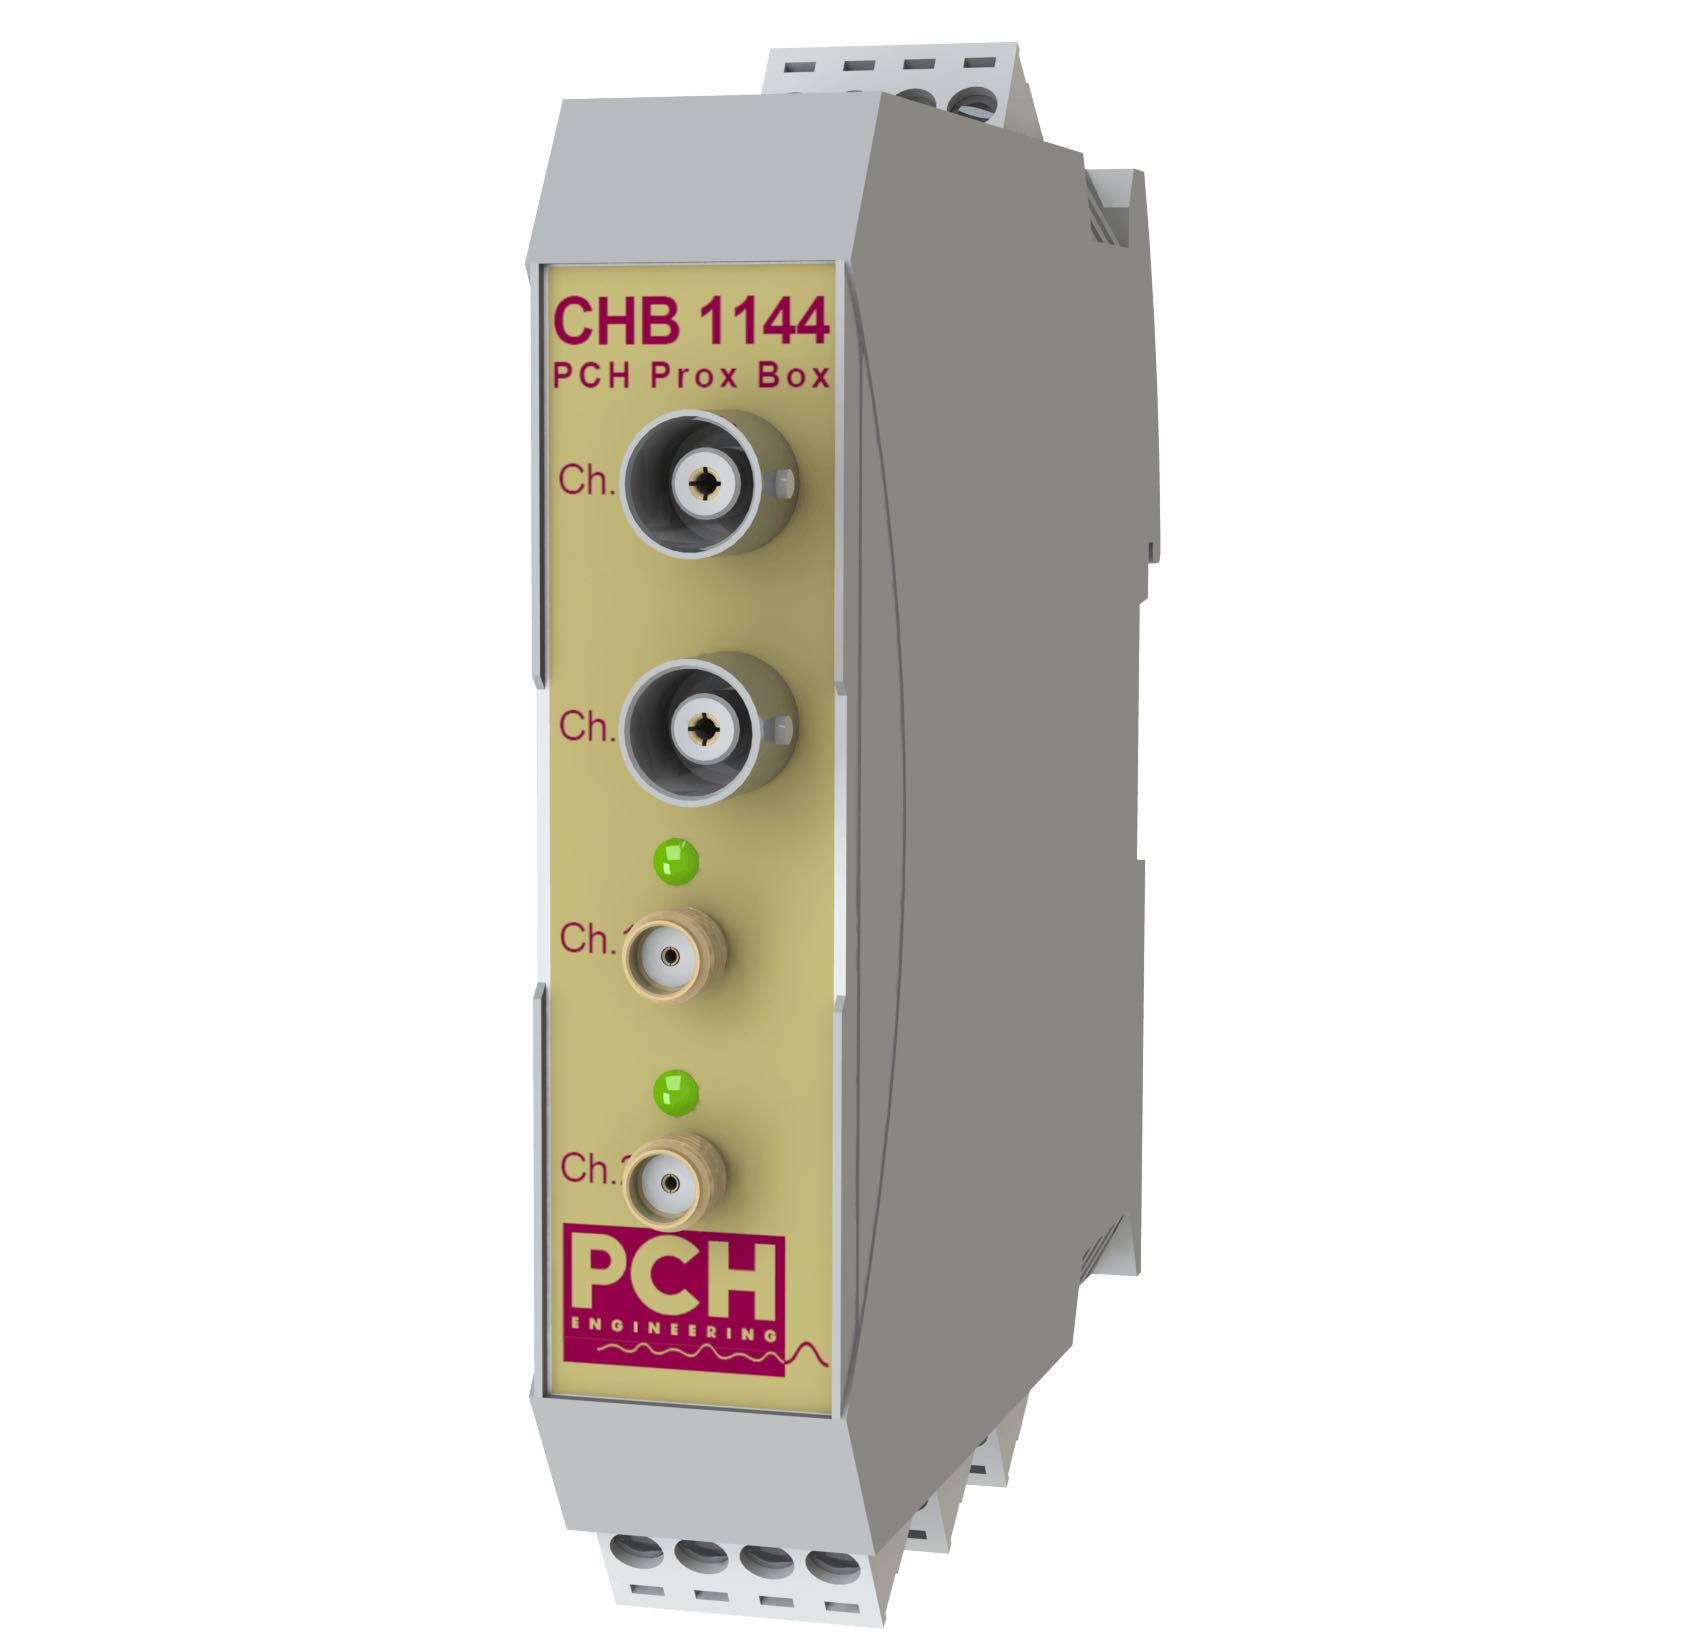 PCH Prox Box CHB 1144